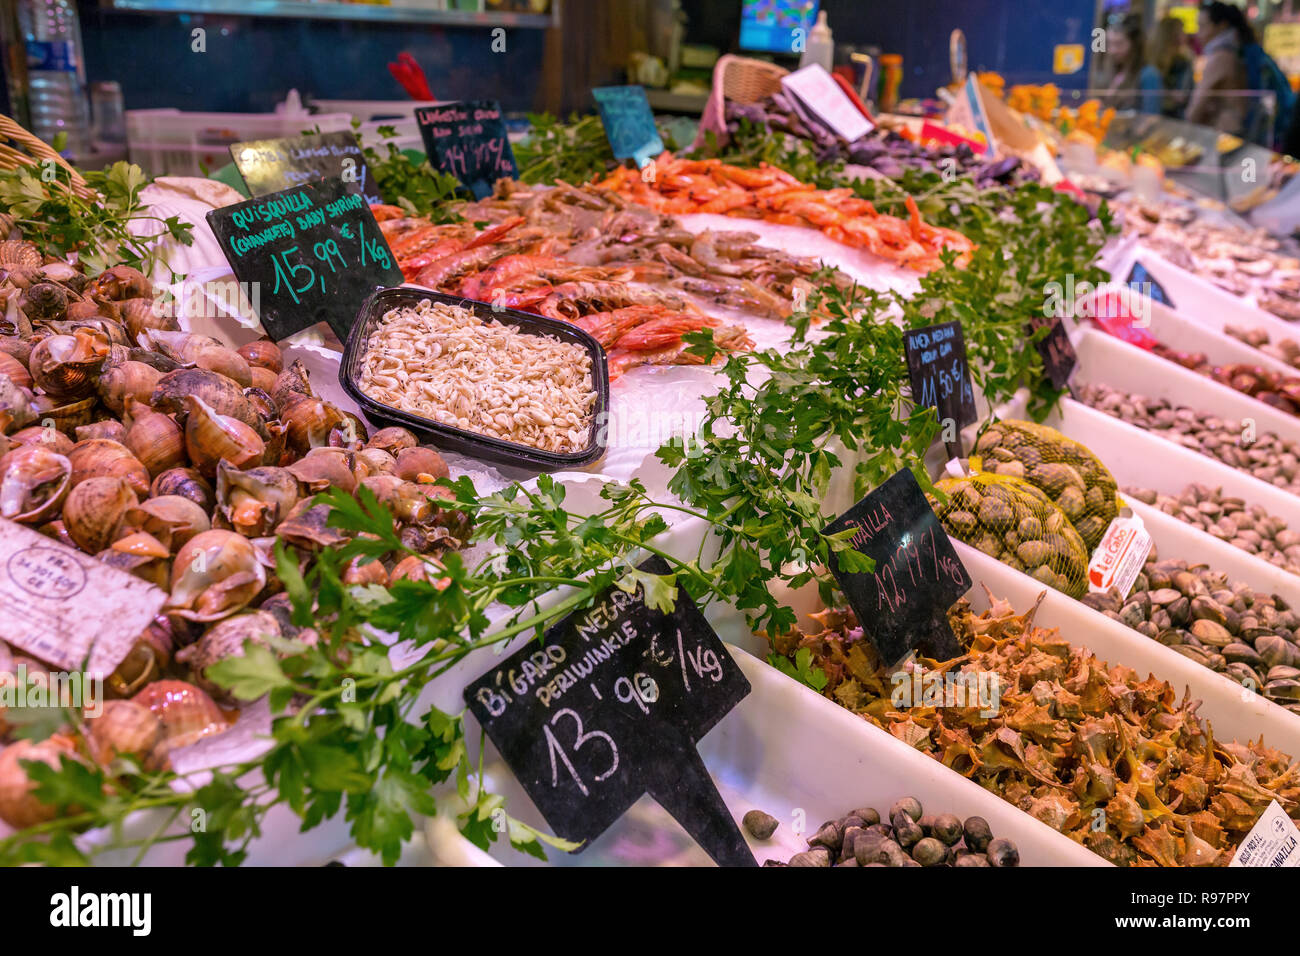 Piatti a base di frutti di mare freschi al Mercat de Sant Josep de la Boqueria, un grande mercato pubblico a Barcellona, Spagna. Foto Stock